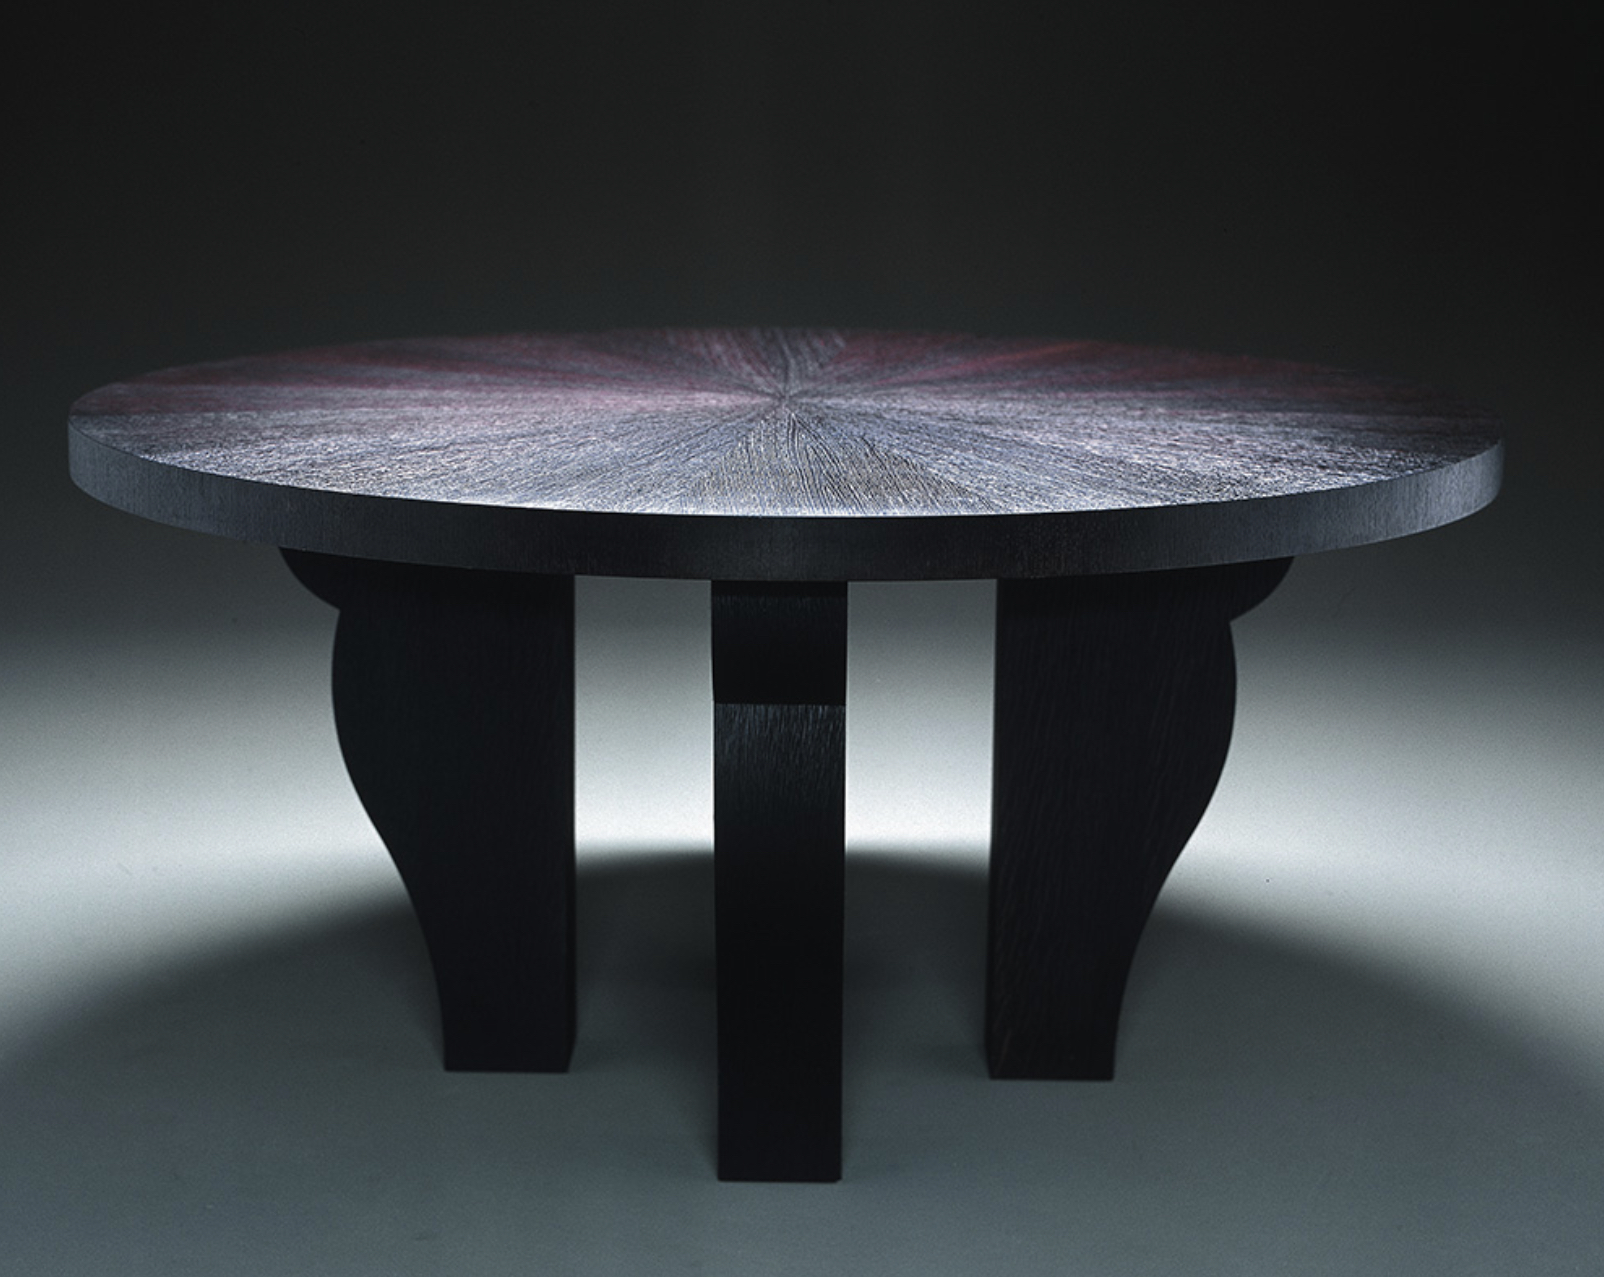 Tisch TABLE RONDE von Ecart International